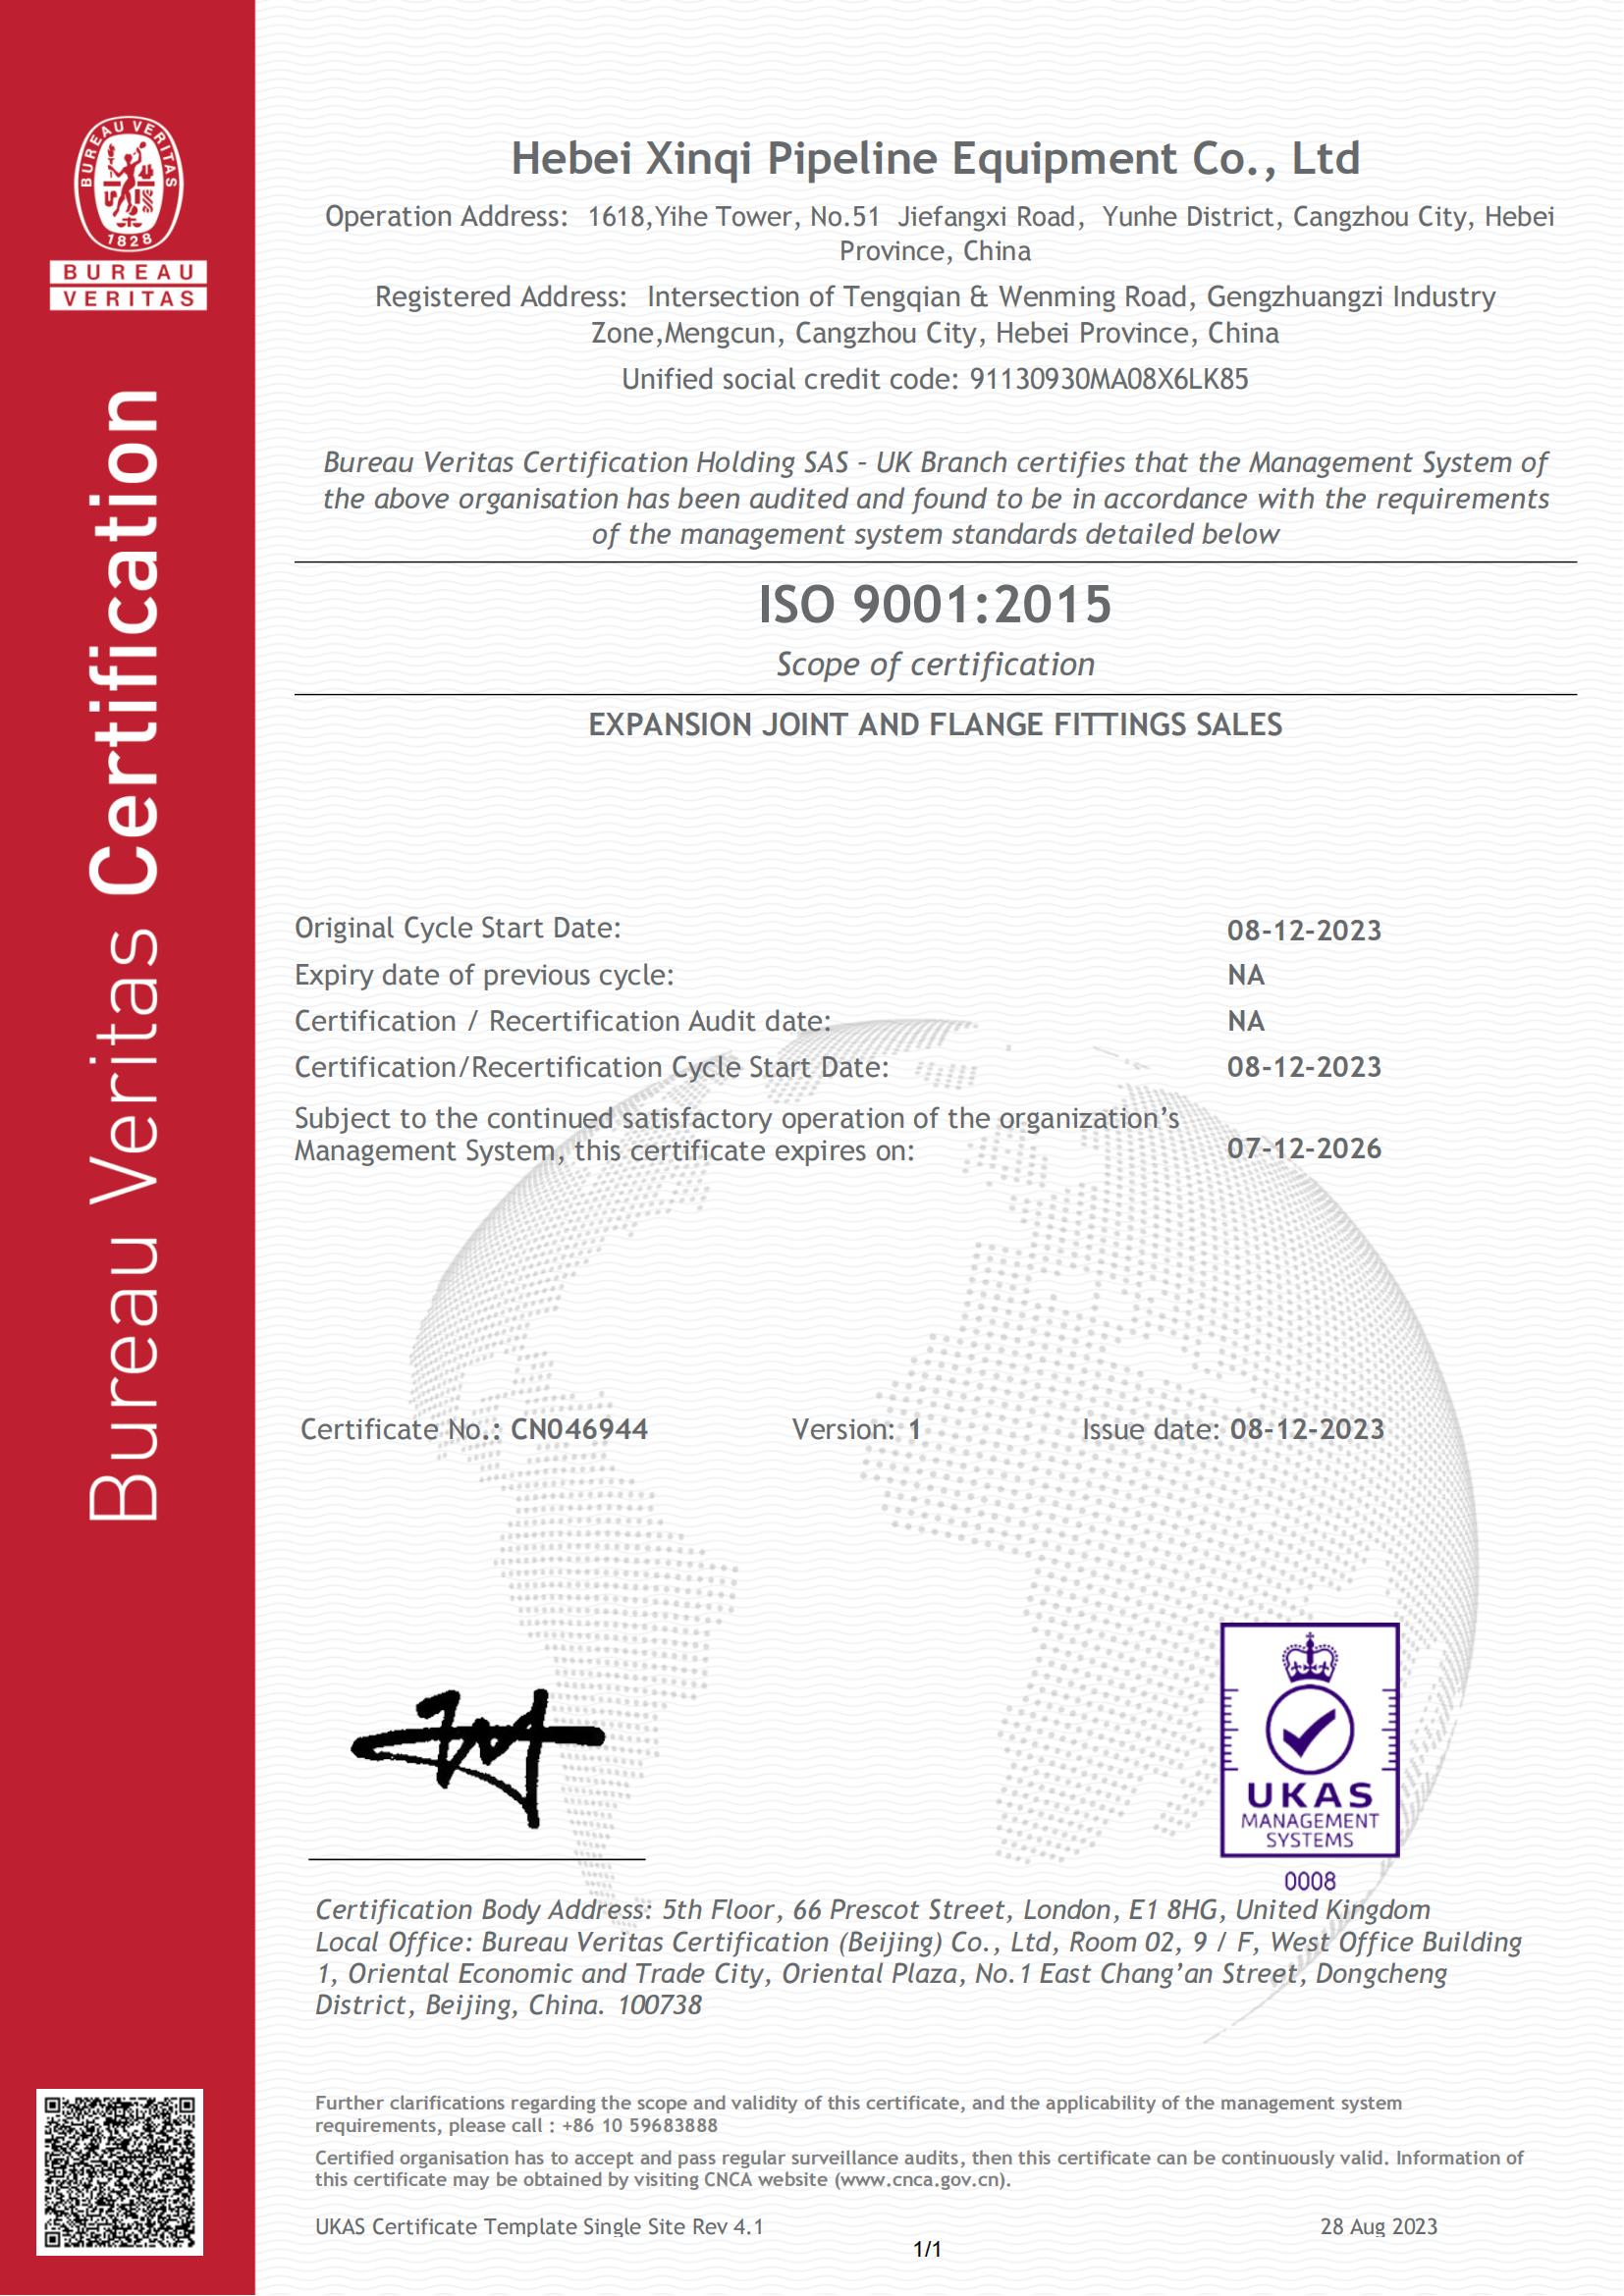 Získali jsme certifikát certifikace ISO.